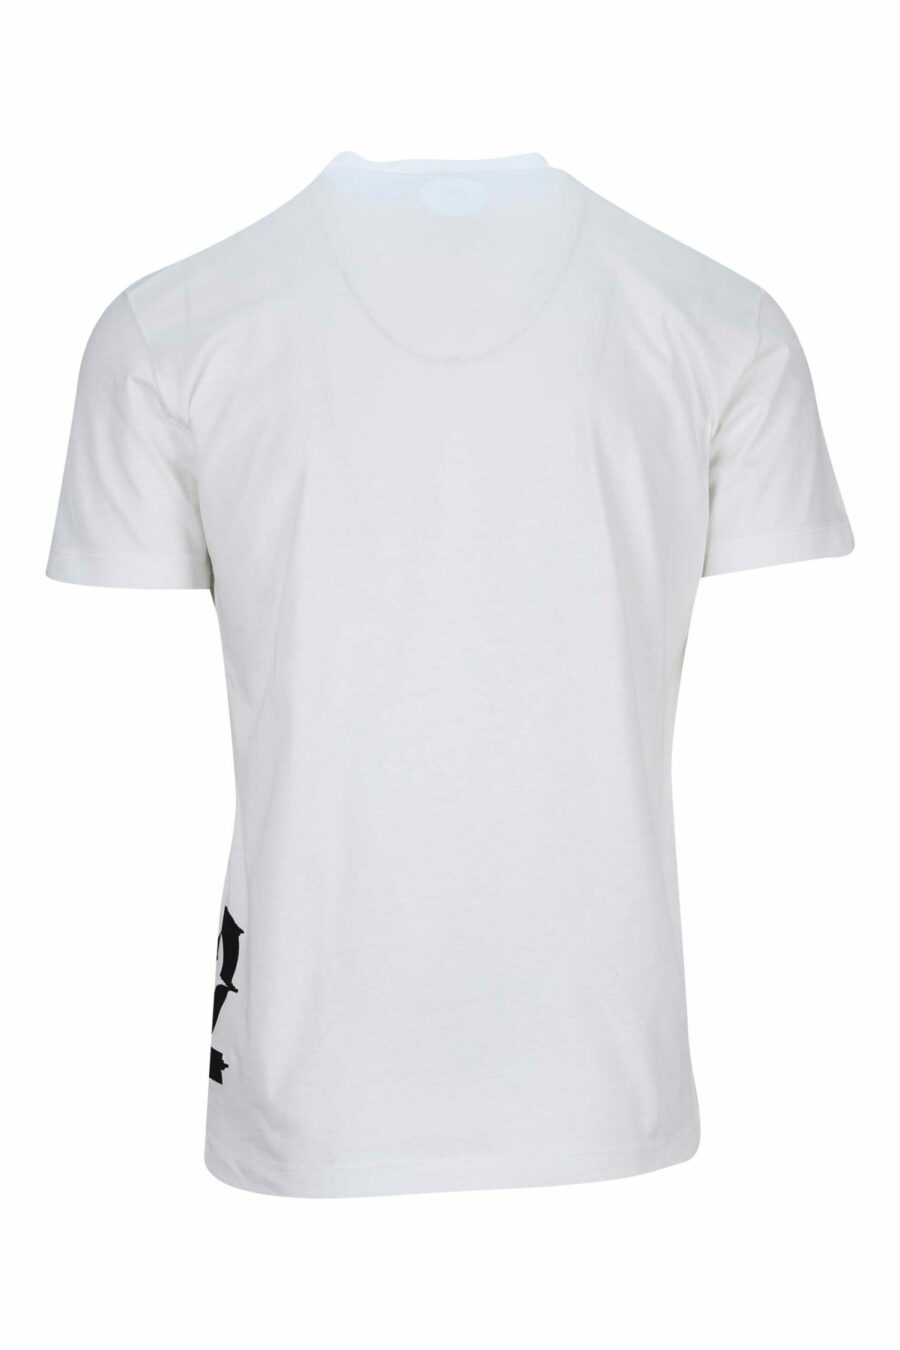 Weißes T-Shirt mit schwarzem verzerrtem Maxilogo darunter - 8054148332730 1 skaliert